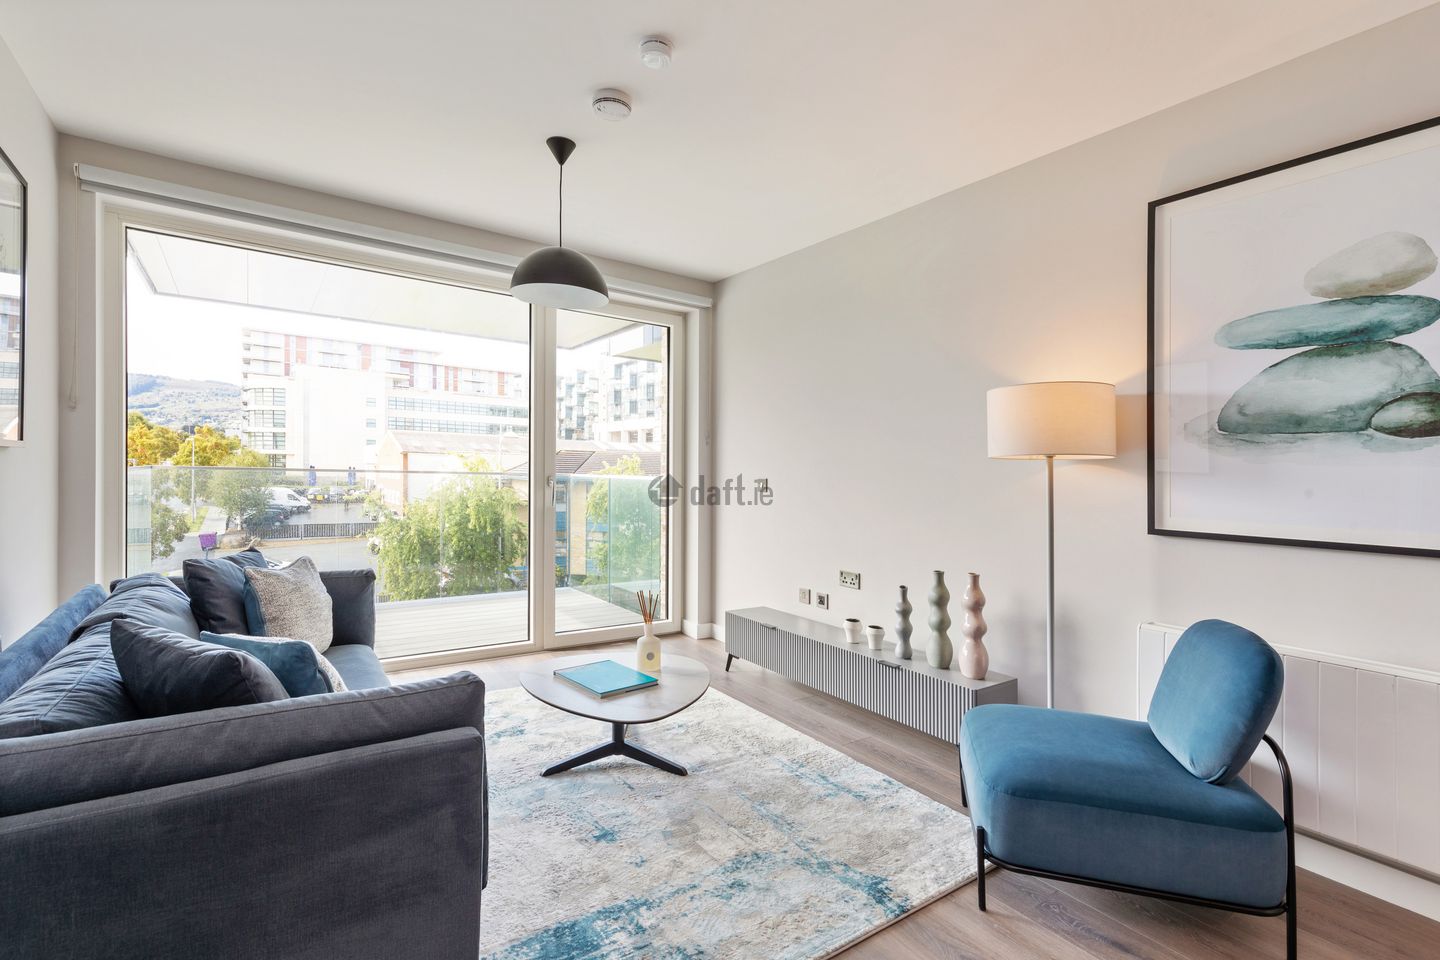 1 Bedroom Apartment , The Oslo, Sandyford Central , Sandyford, Dublin 18